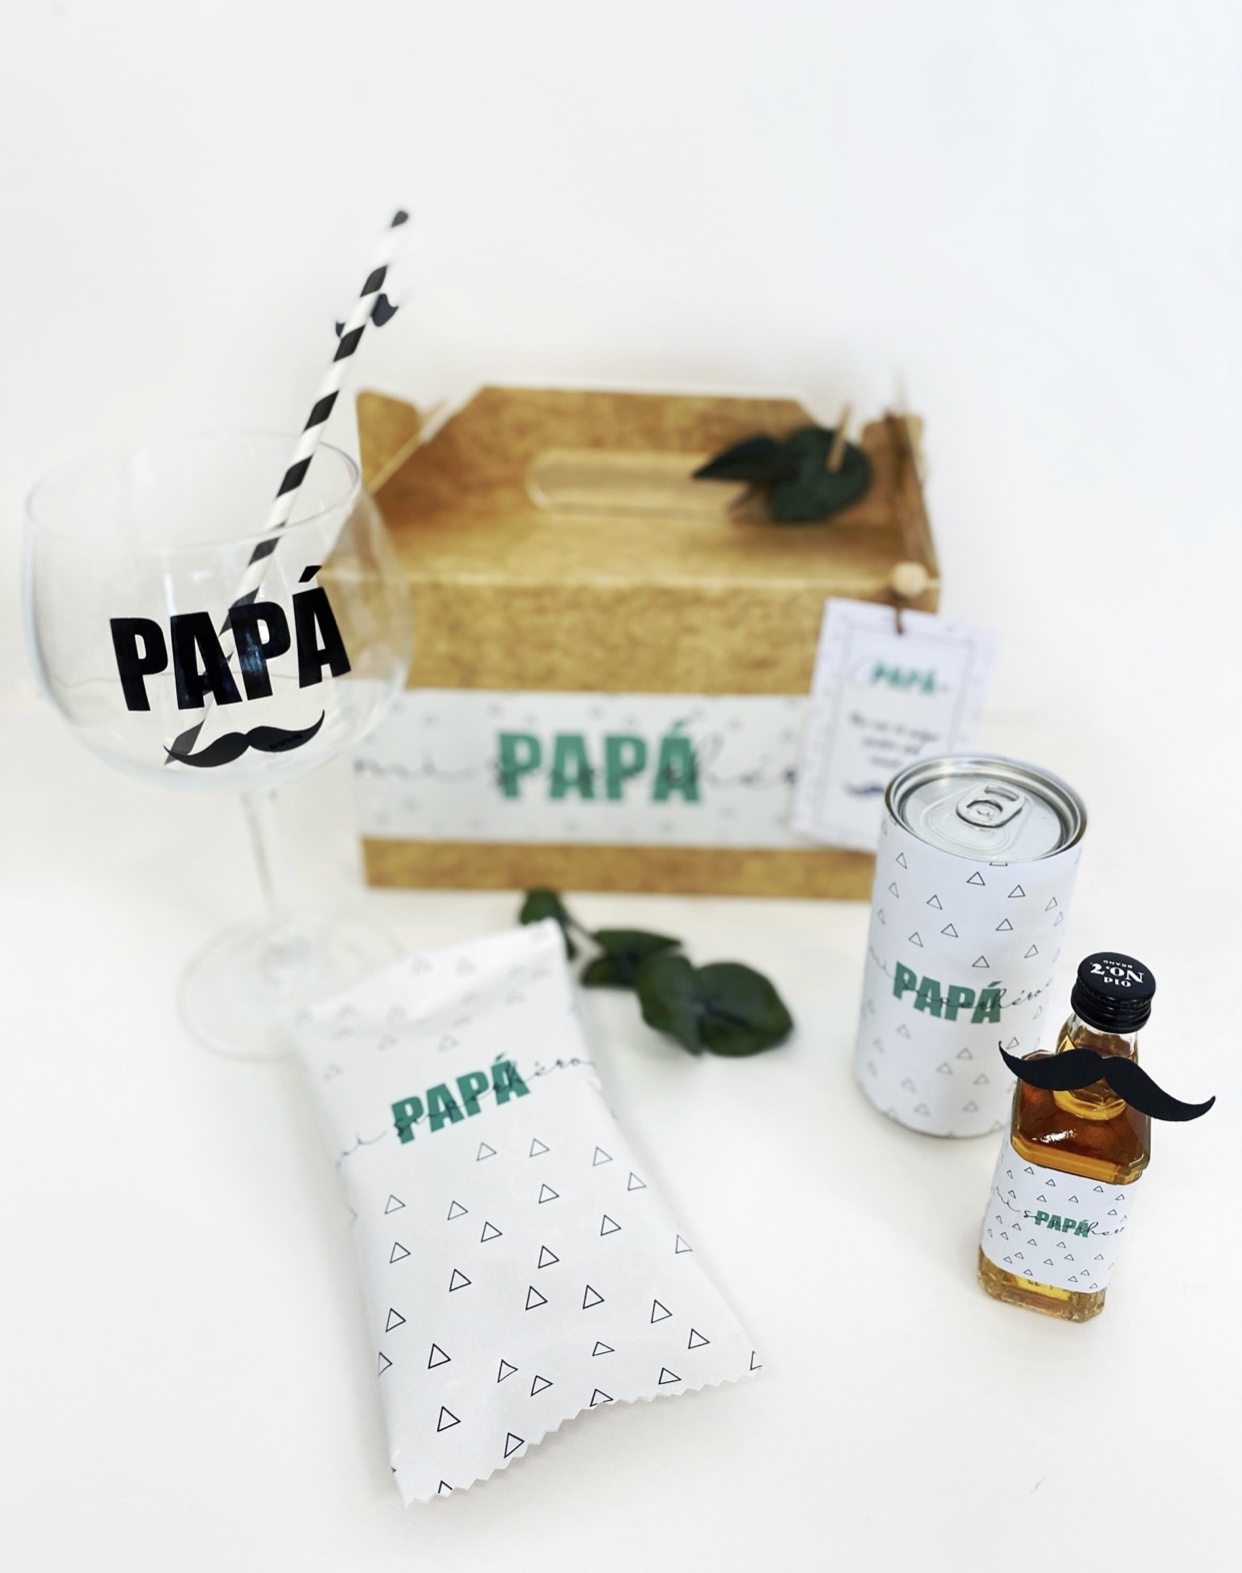 Pack de copa personalizada con bebidas y golosinas para regalo de reyes, día del padre, cumpleaños.